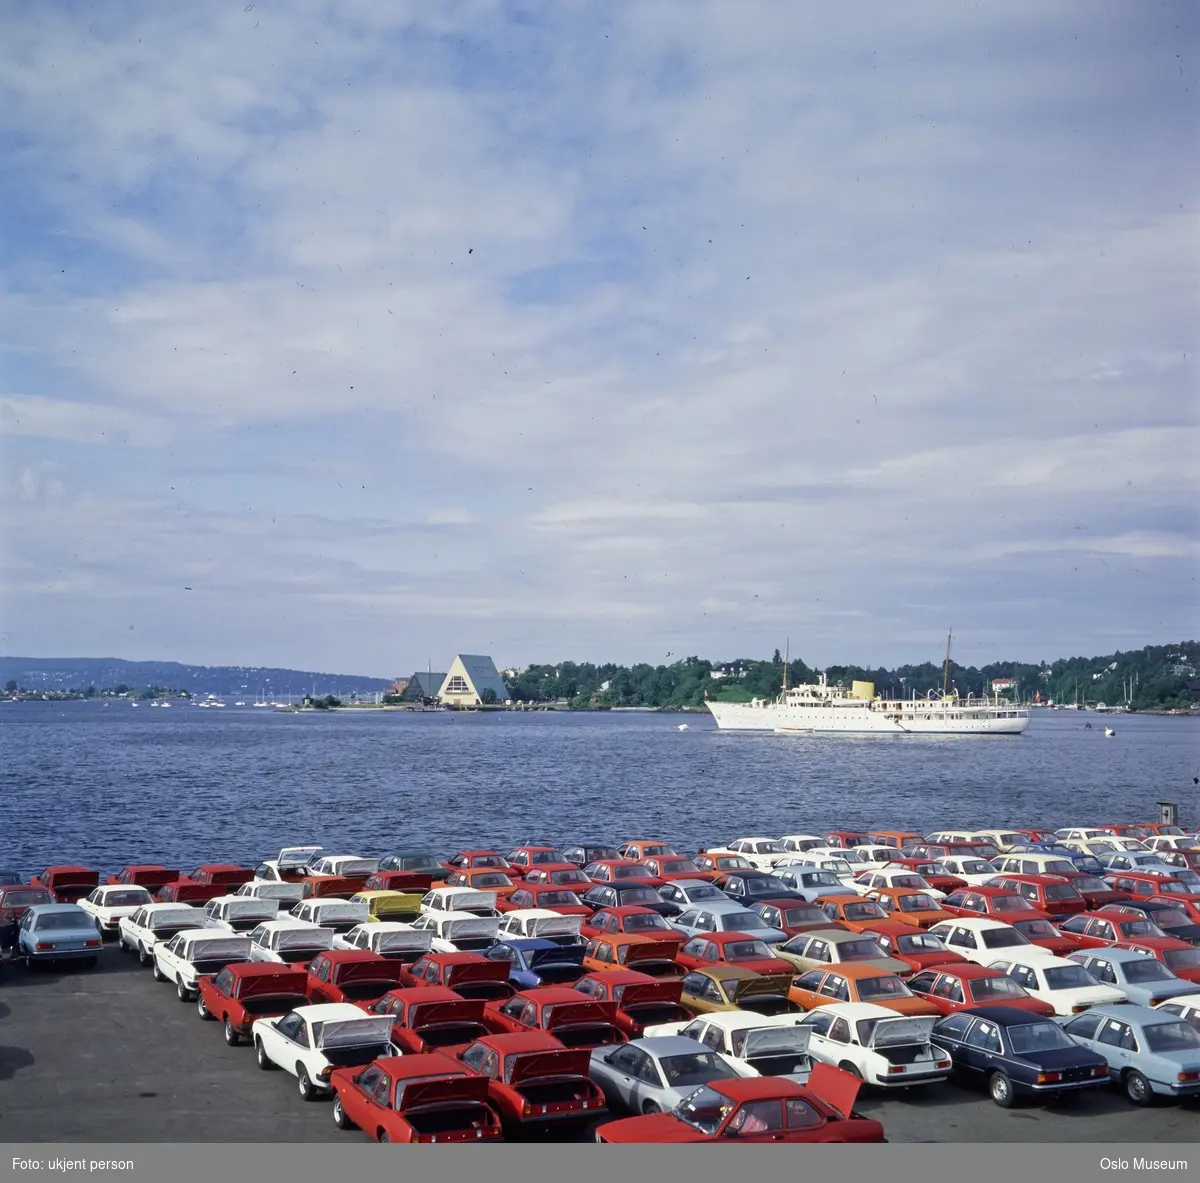 havn, oppstillingsplass for nye biler, fjord, kongeskipet "Norge", Frammuseet